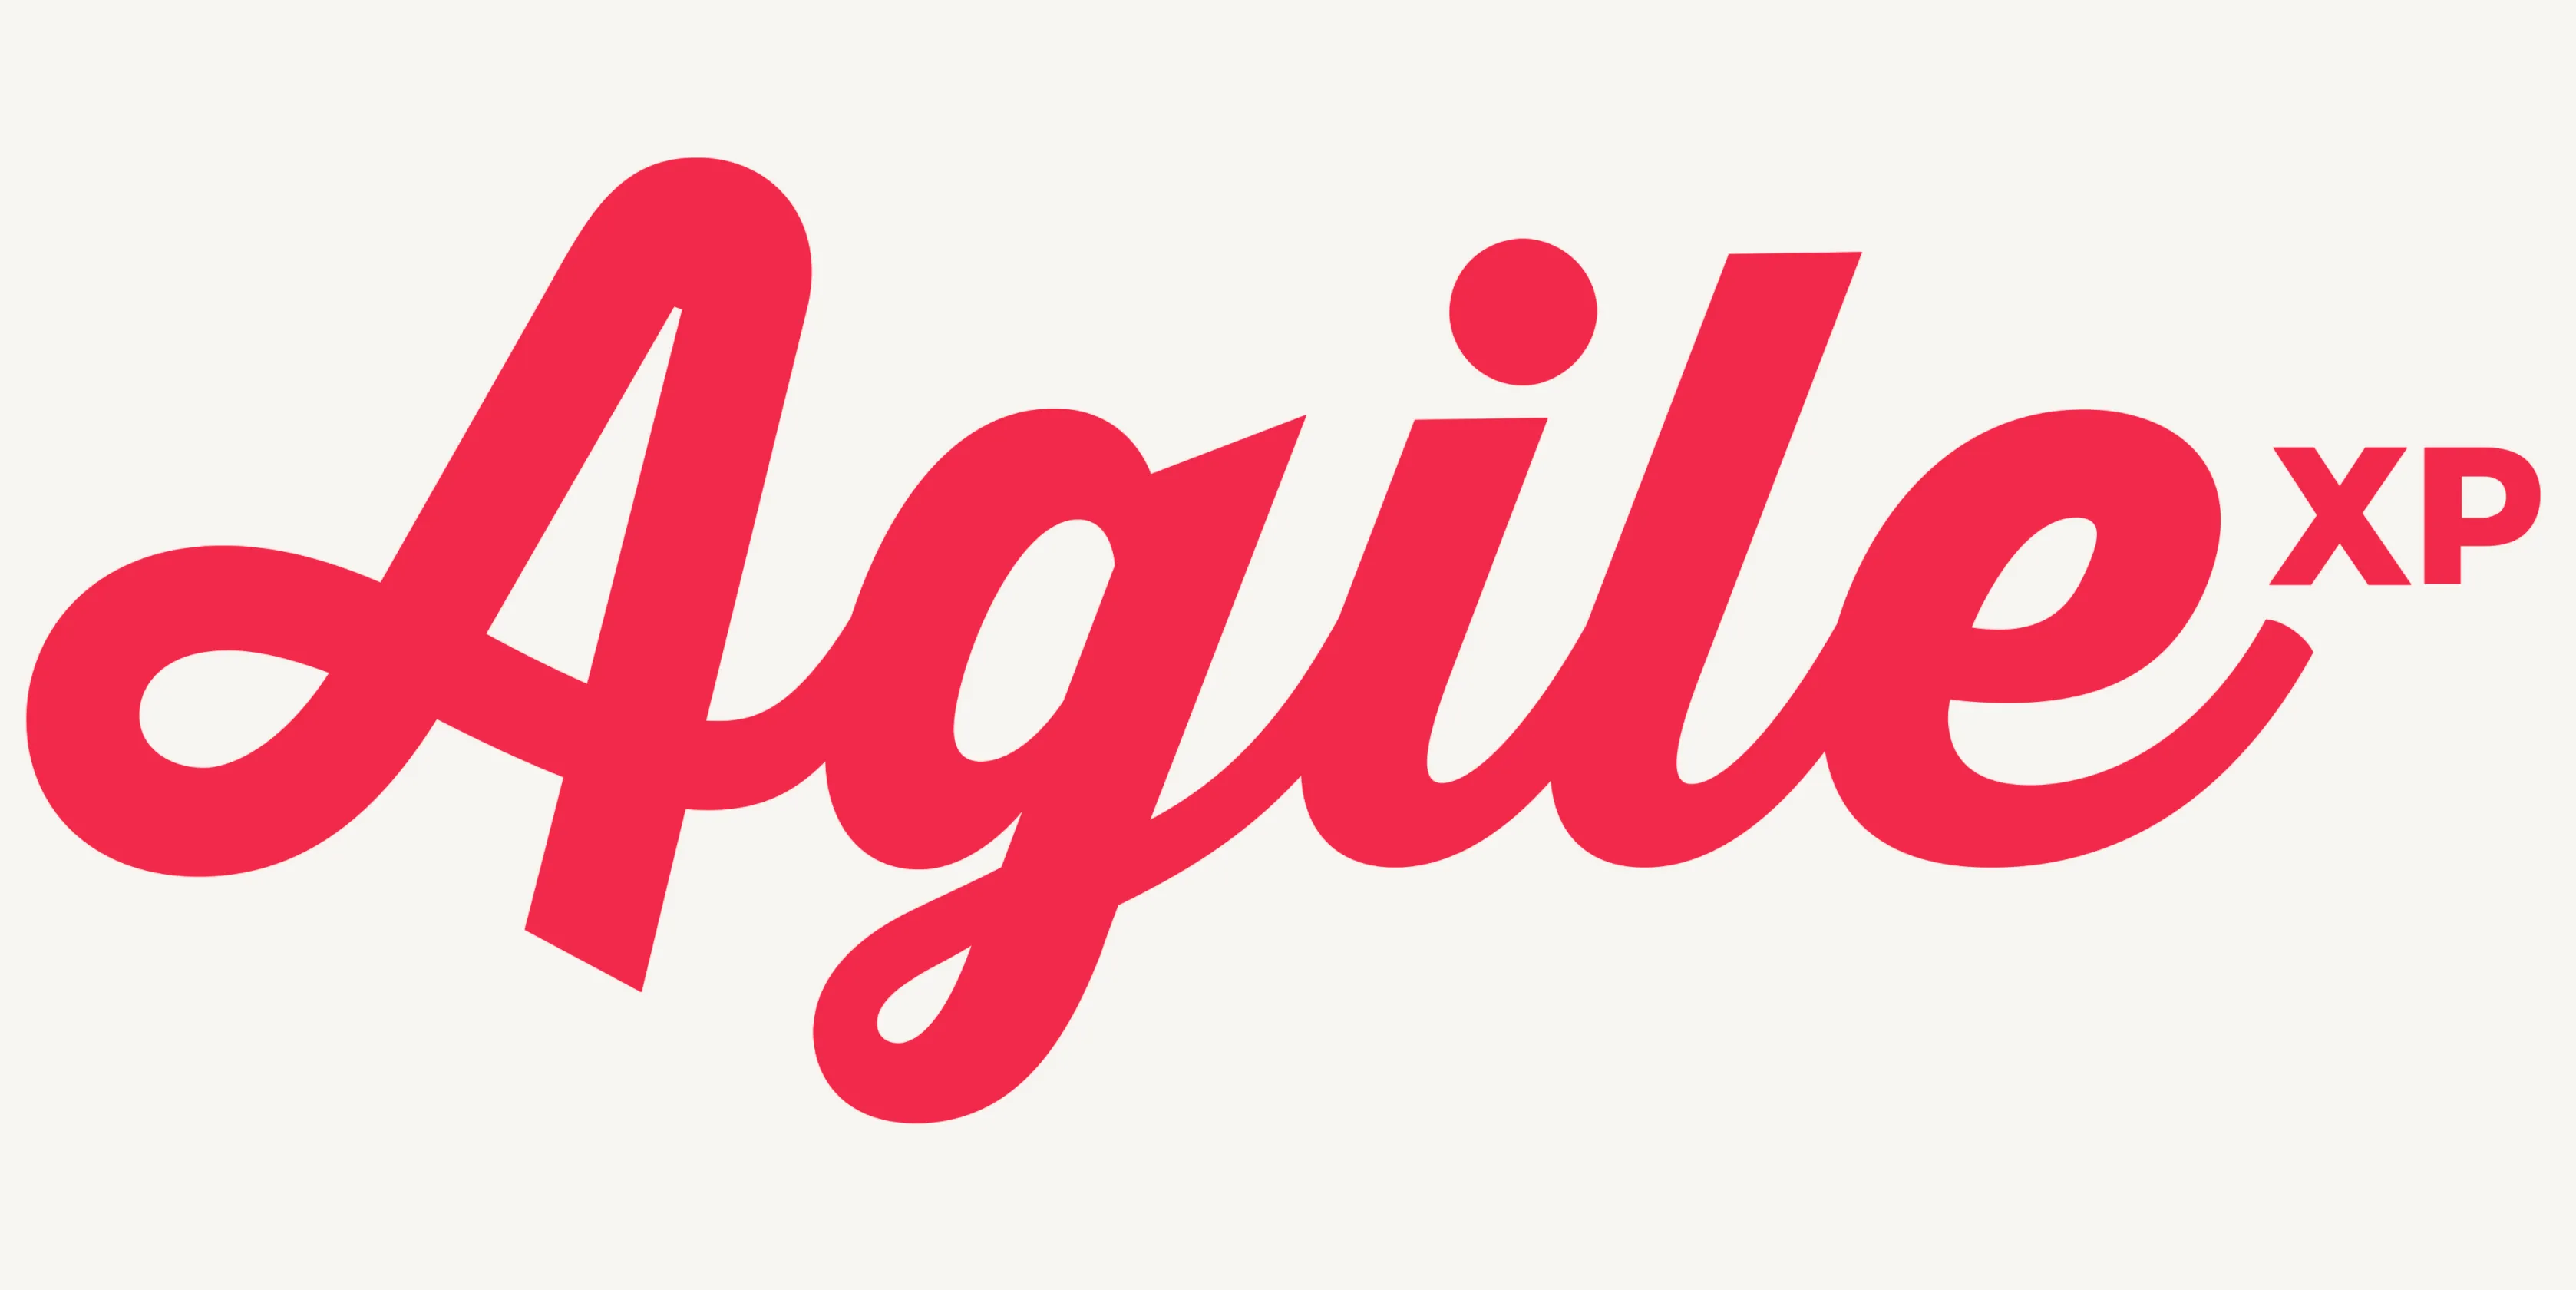 Agile XP logo